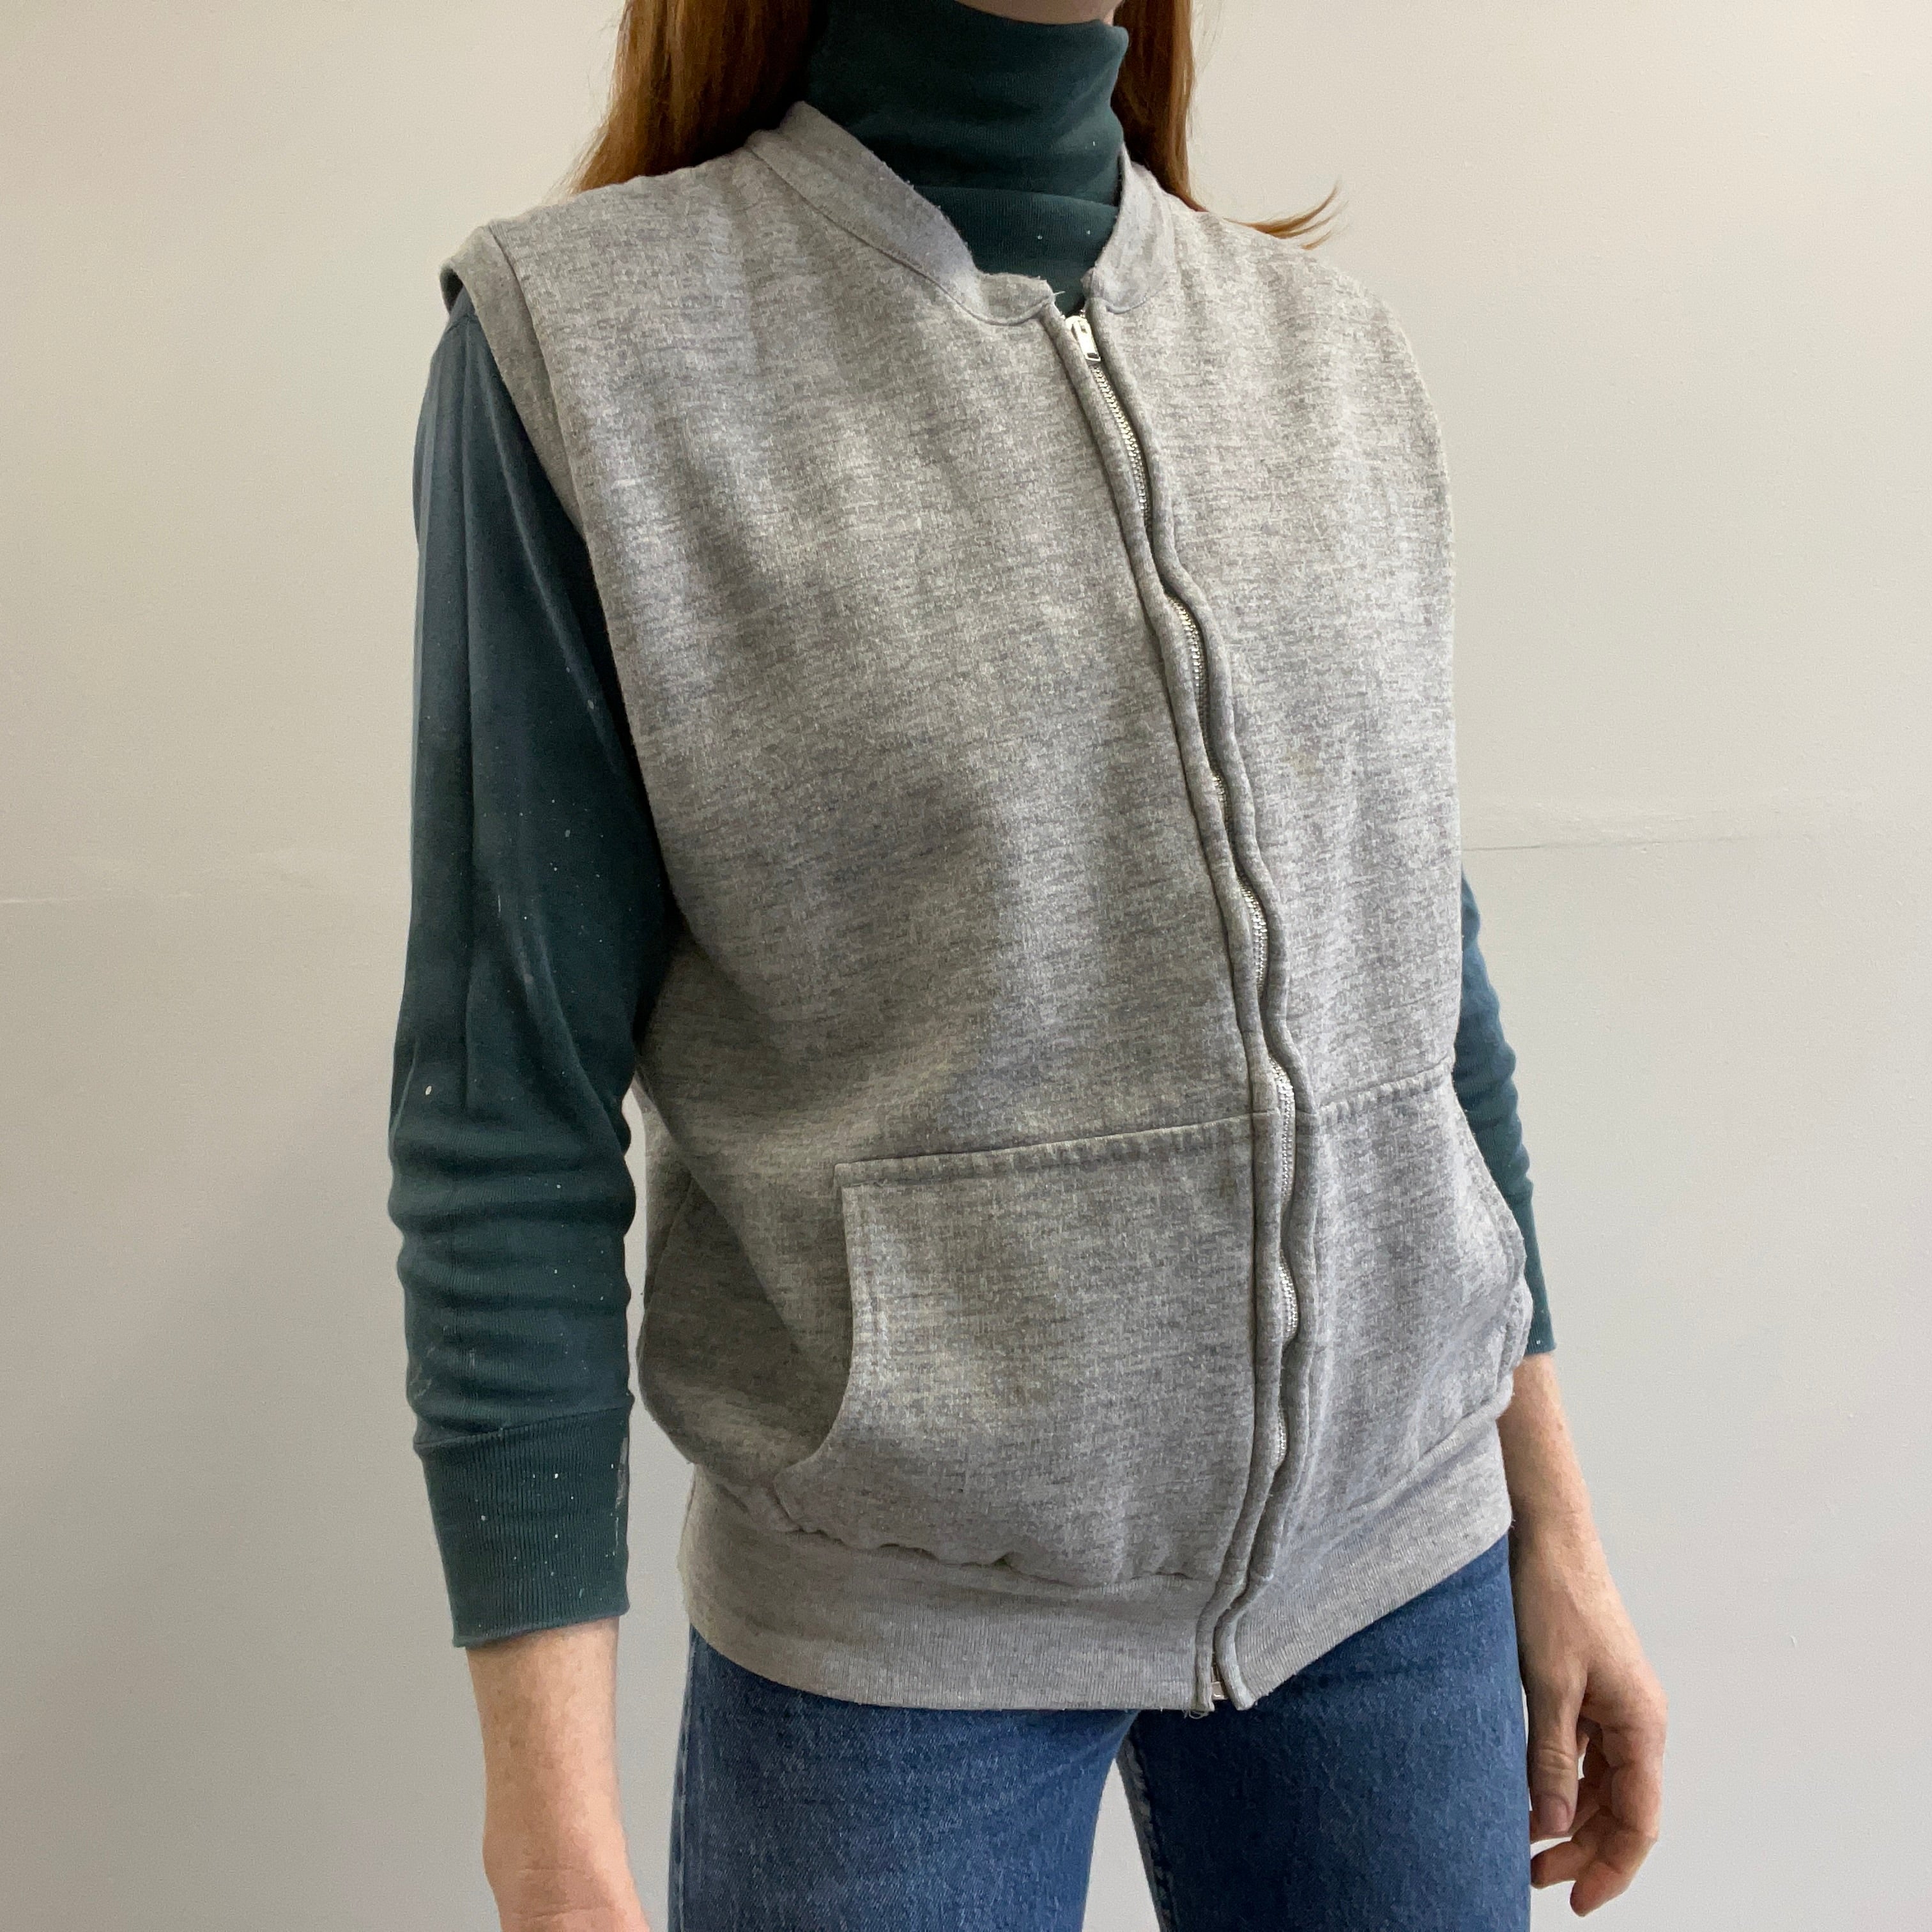 1970s IM Sports Insulated Grey Zip Up Sweatshirt Vest